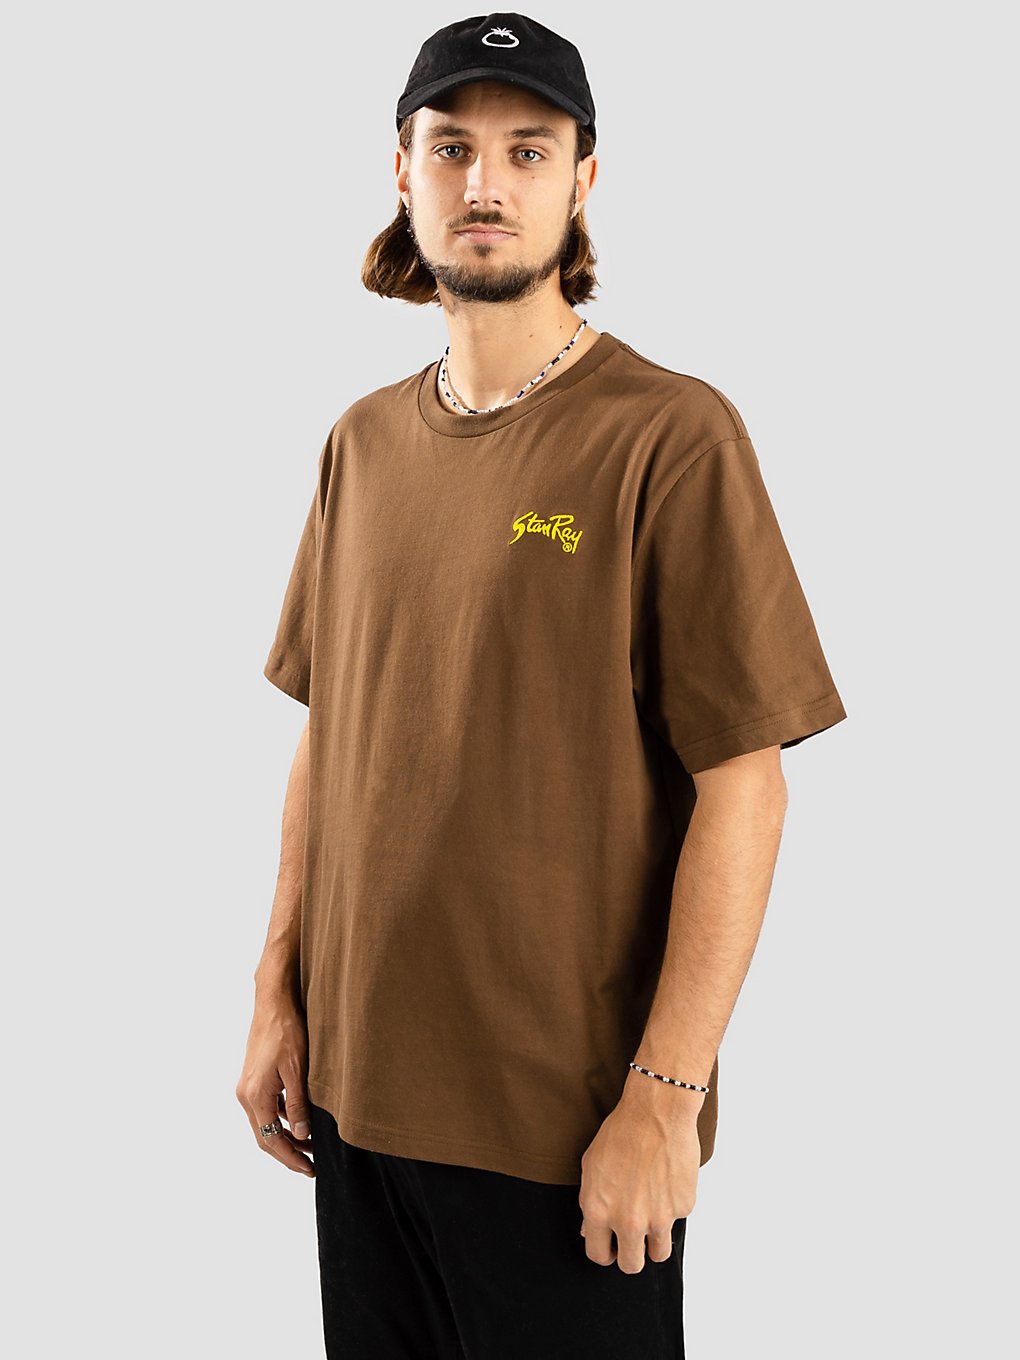 Stan Ray Gold Standard T-Shirt bruin